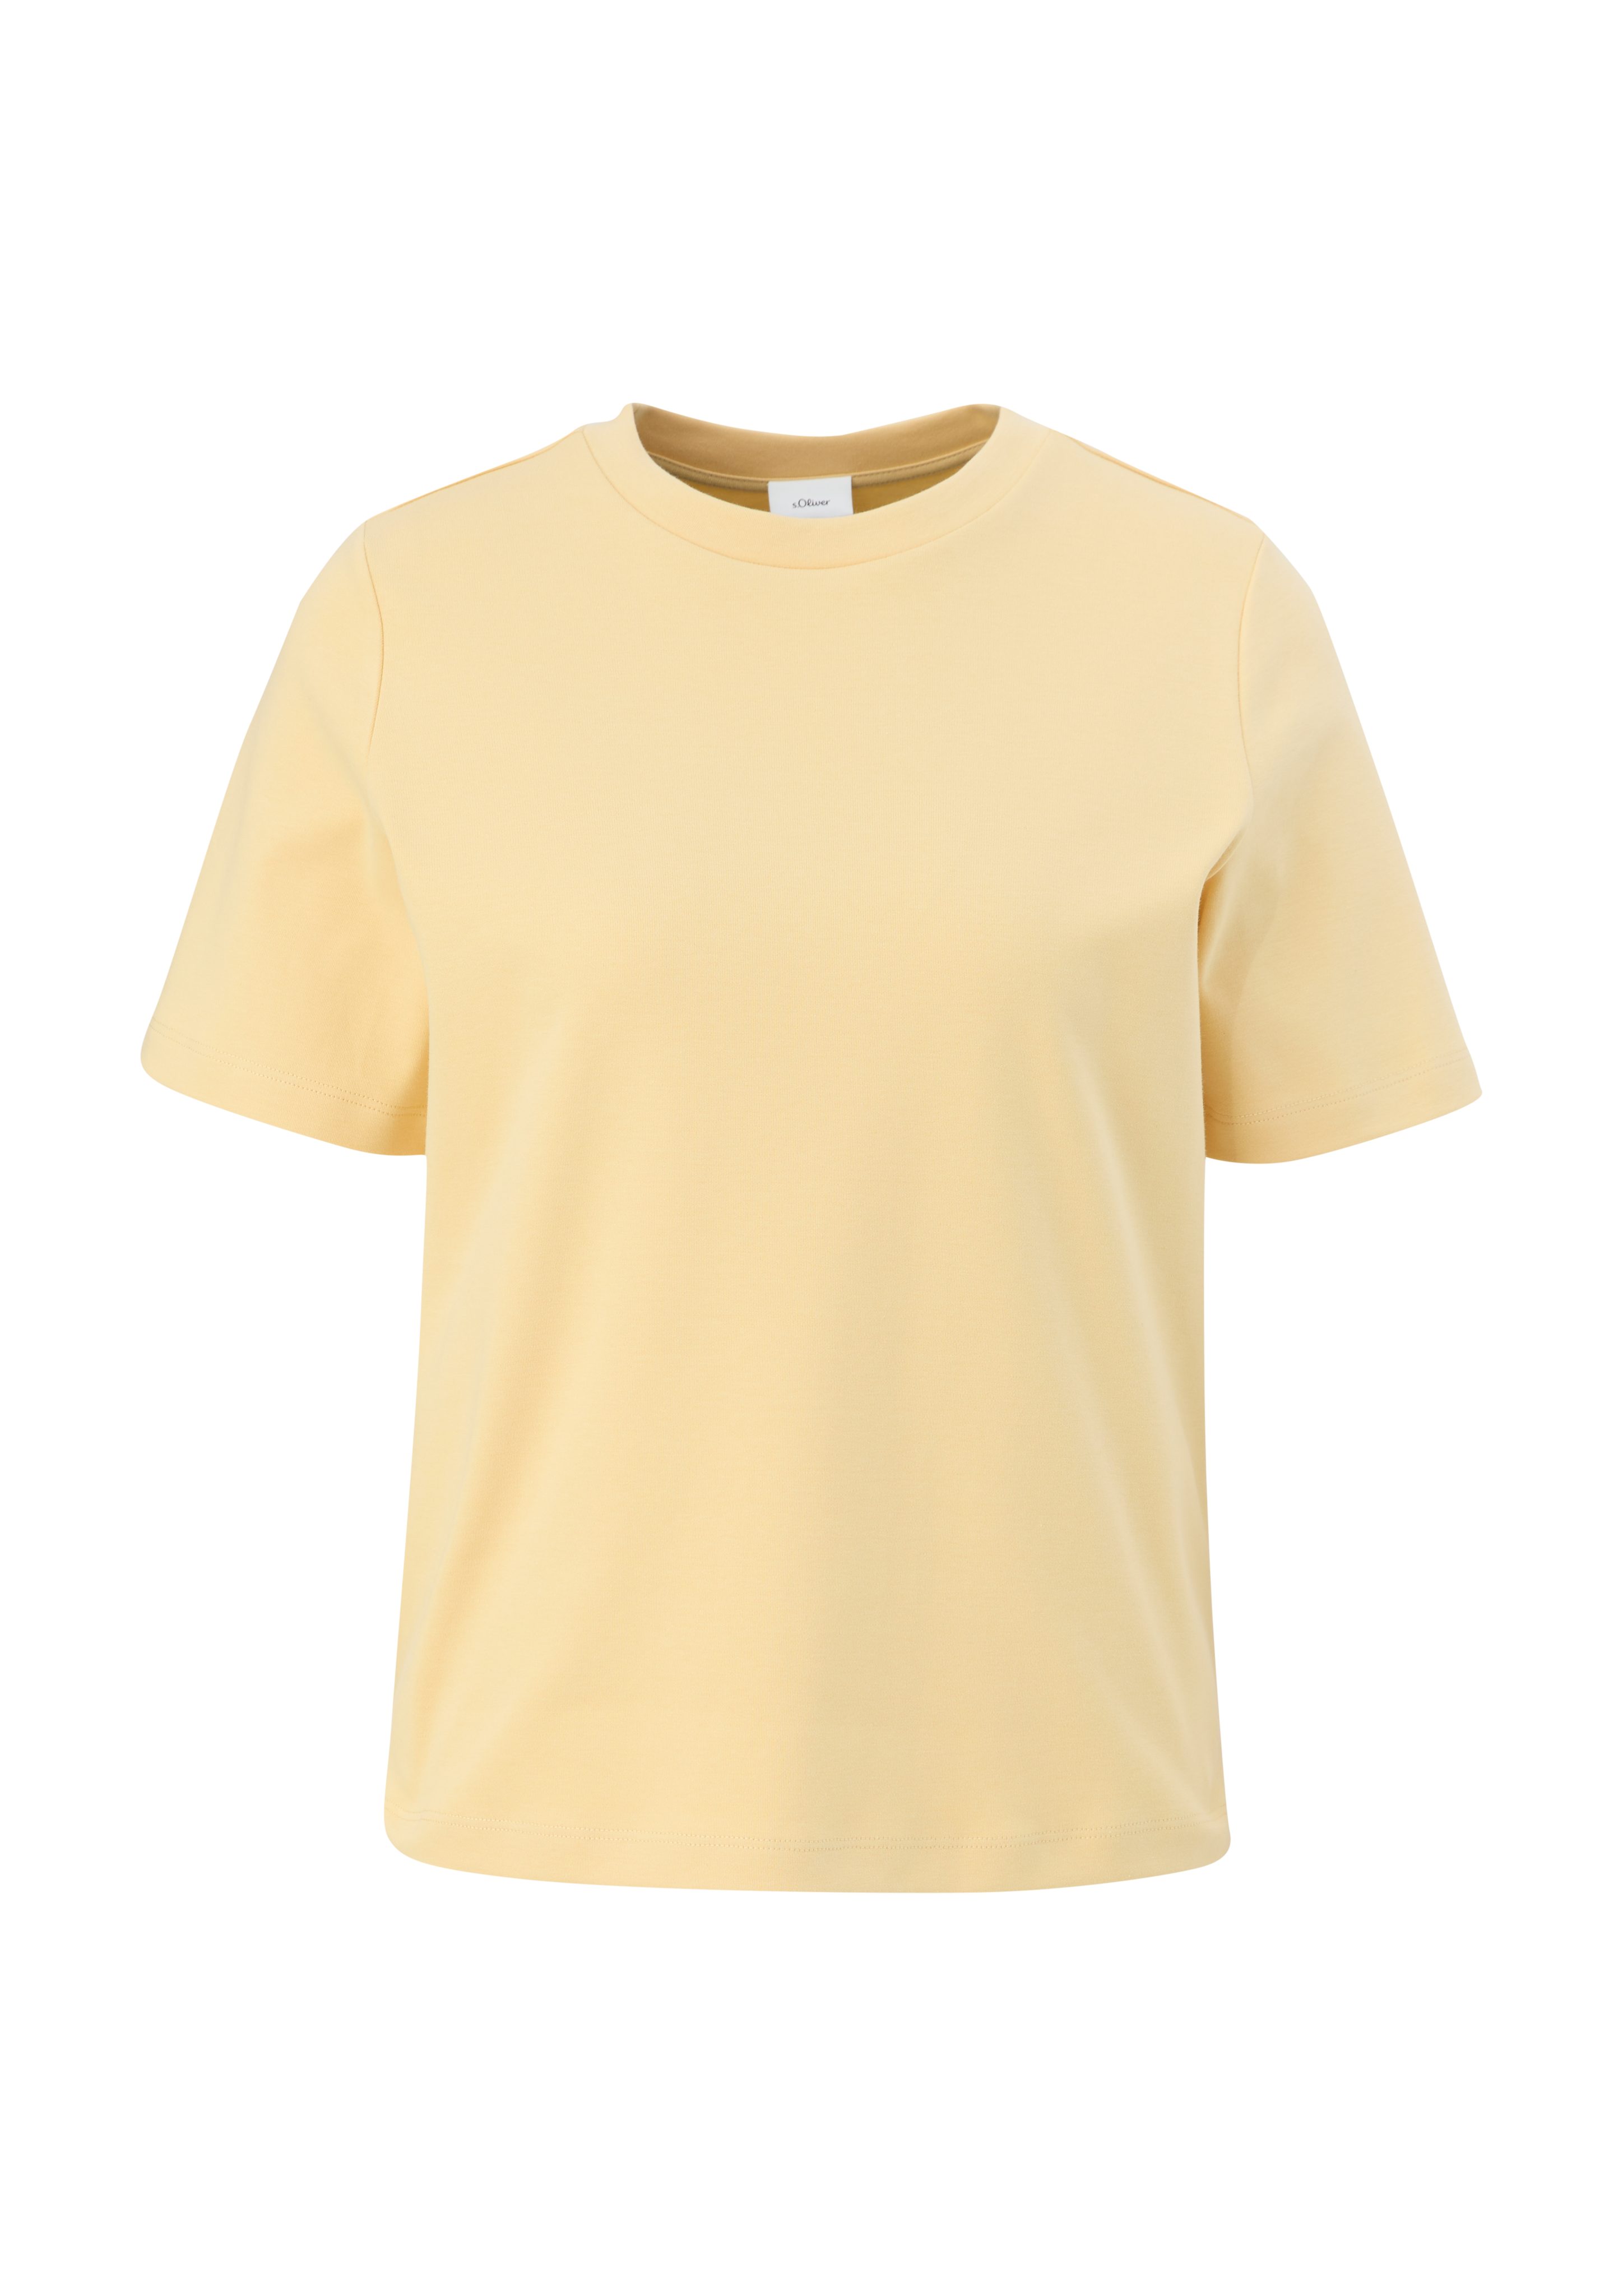 s.Oliver BLACK vanille Kurzarmshirt reiner T-Shirt LABEL Stickerei aus Baumwolle